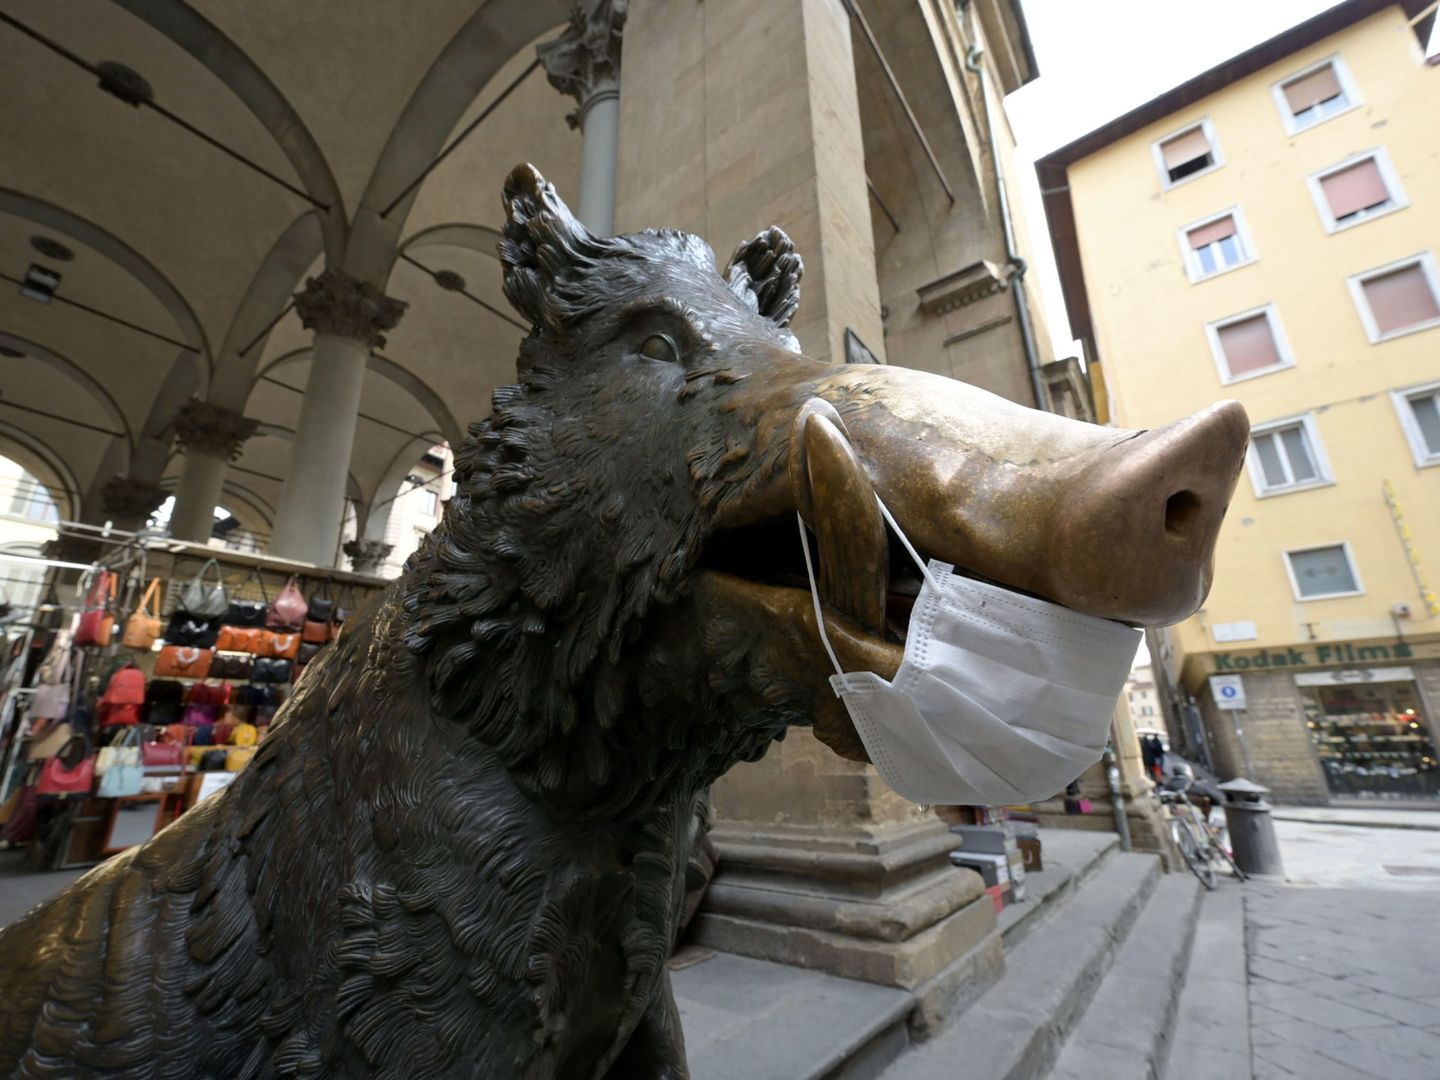 Vista del jabalí de bronce, Porcellino, con una mascarilla, en el centro de Florencia, Italia. (EFE)